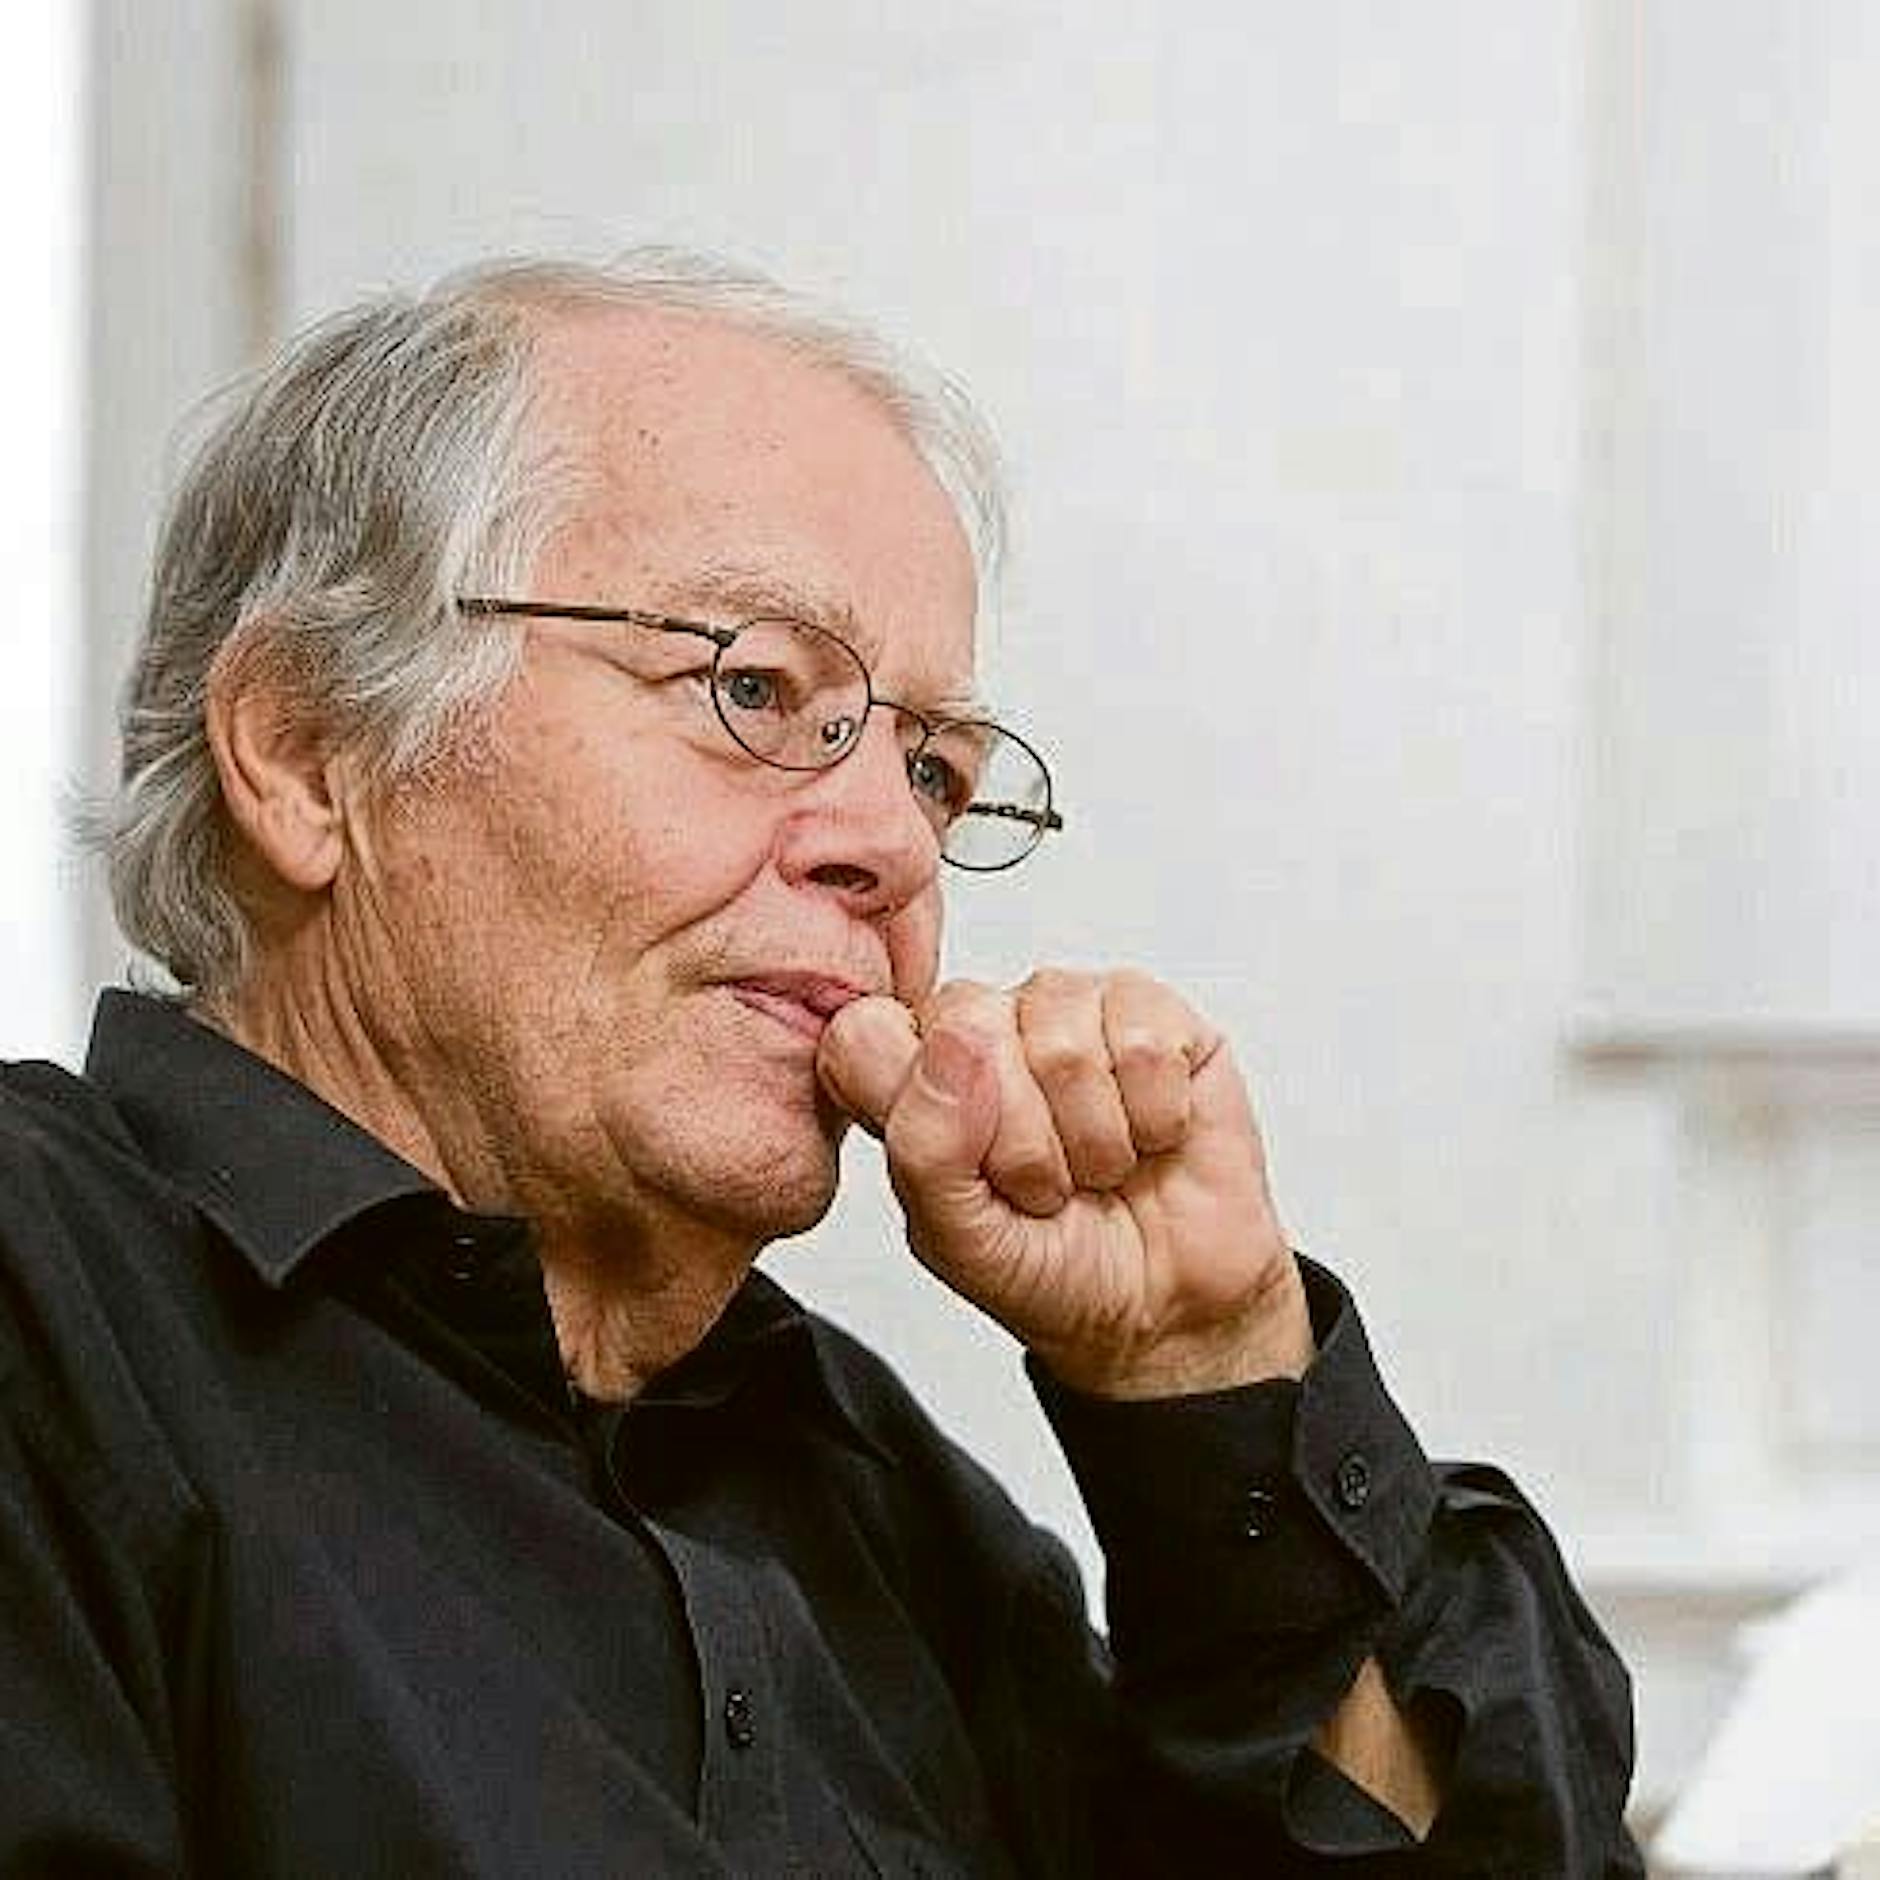 Volker Braun zum 85.: Keine Rede, keine Blumen – aber ermutigende Dichtung in der Volksbühne